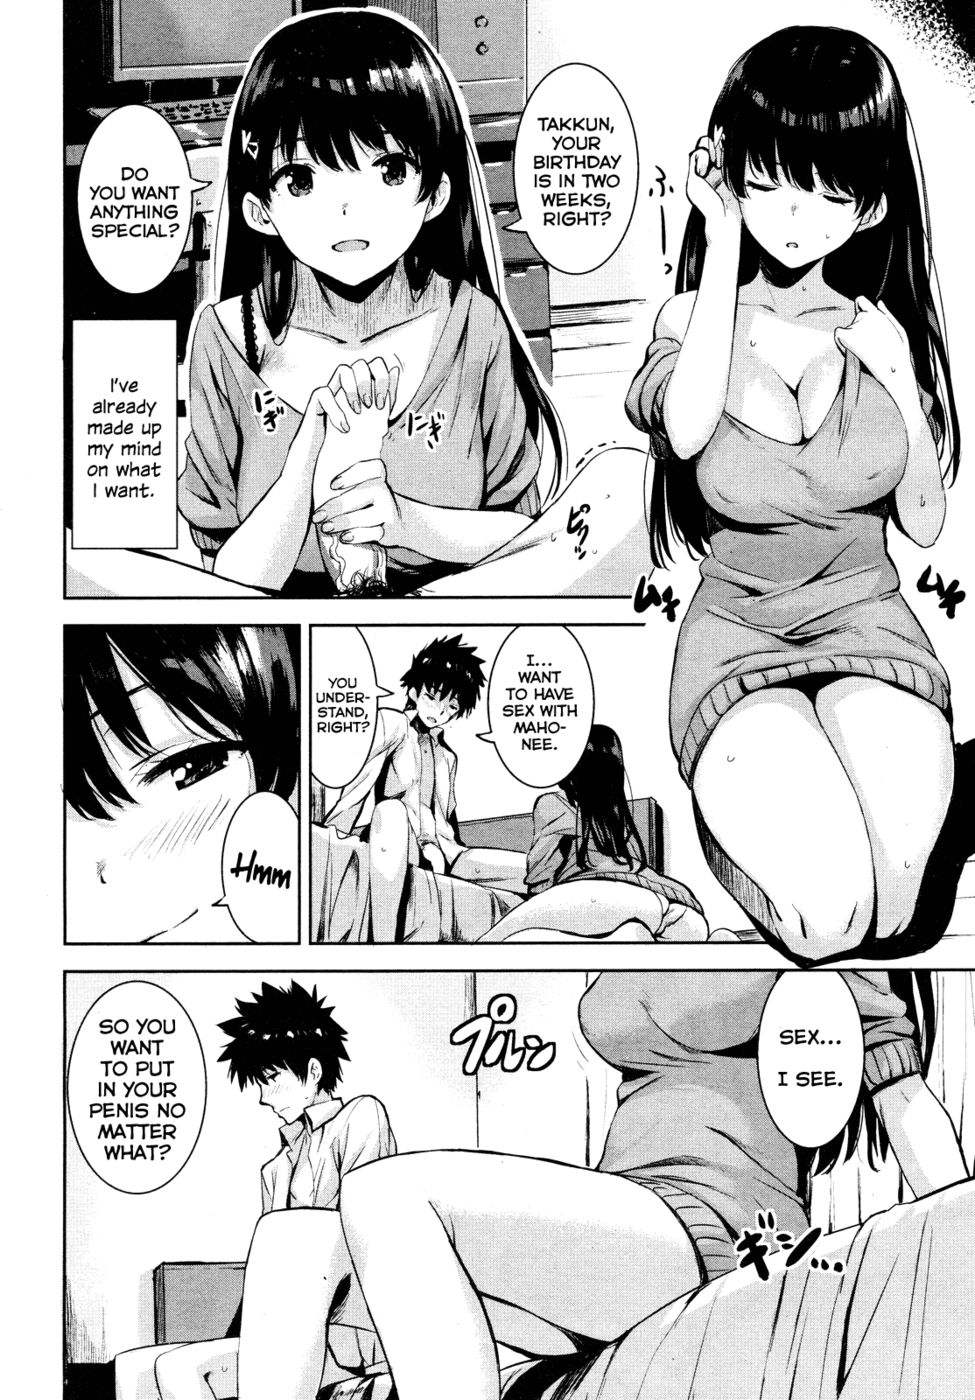 Hentai Manga Comic-Real Sex, Please!-Read-4